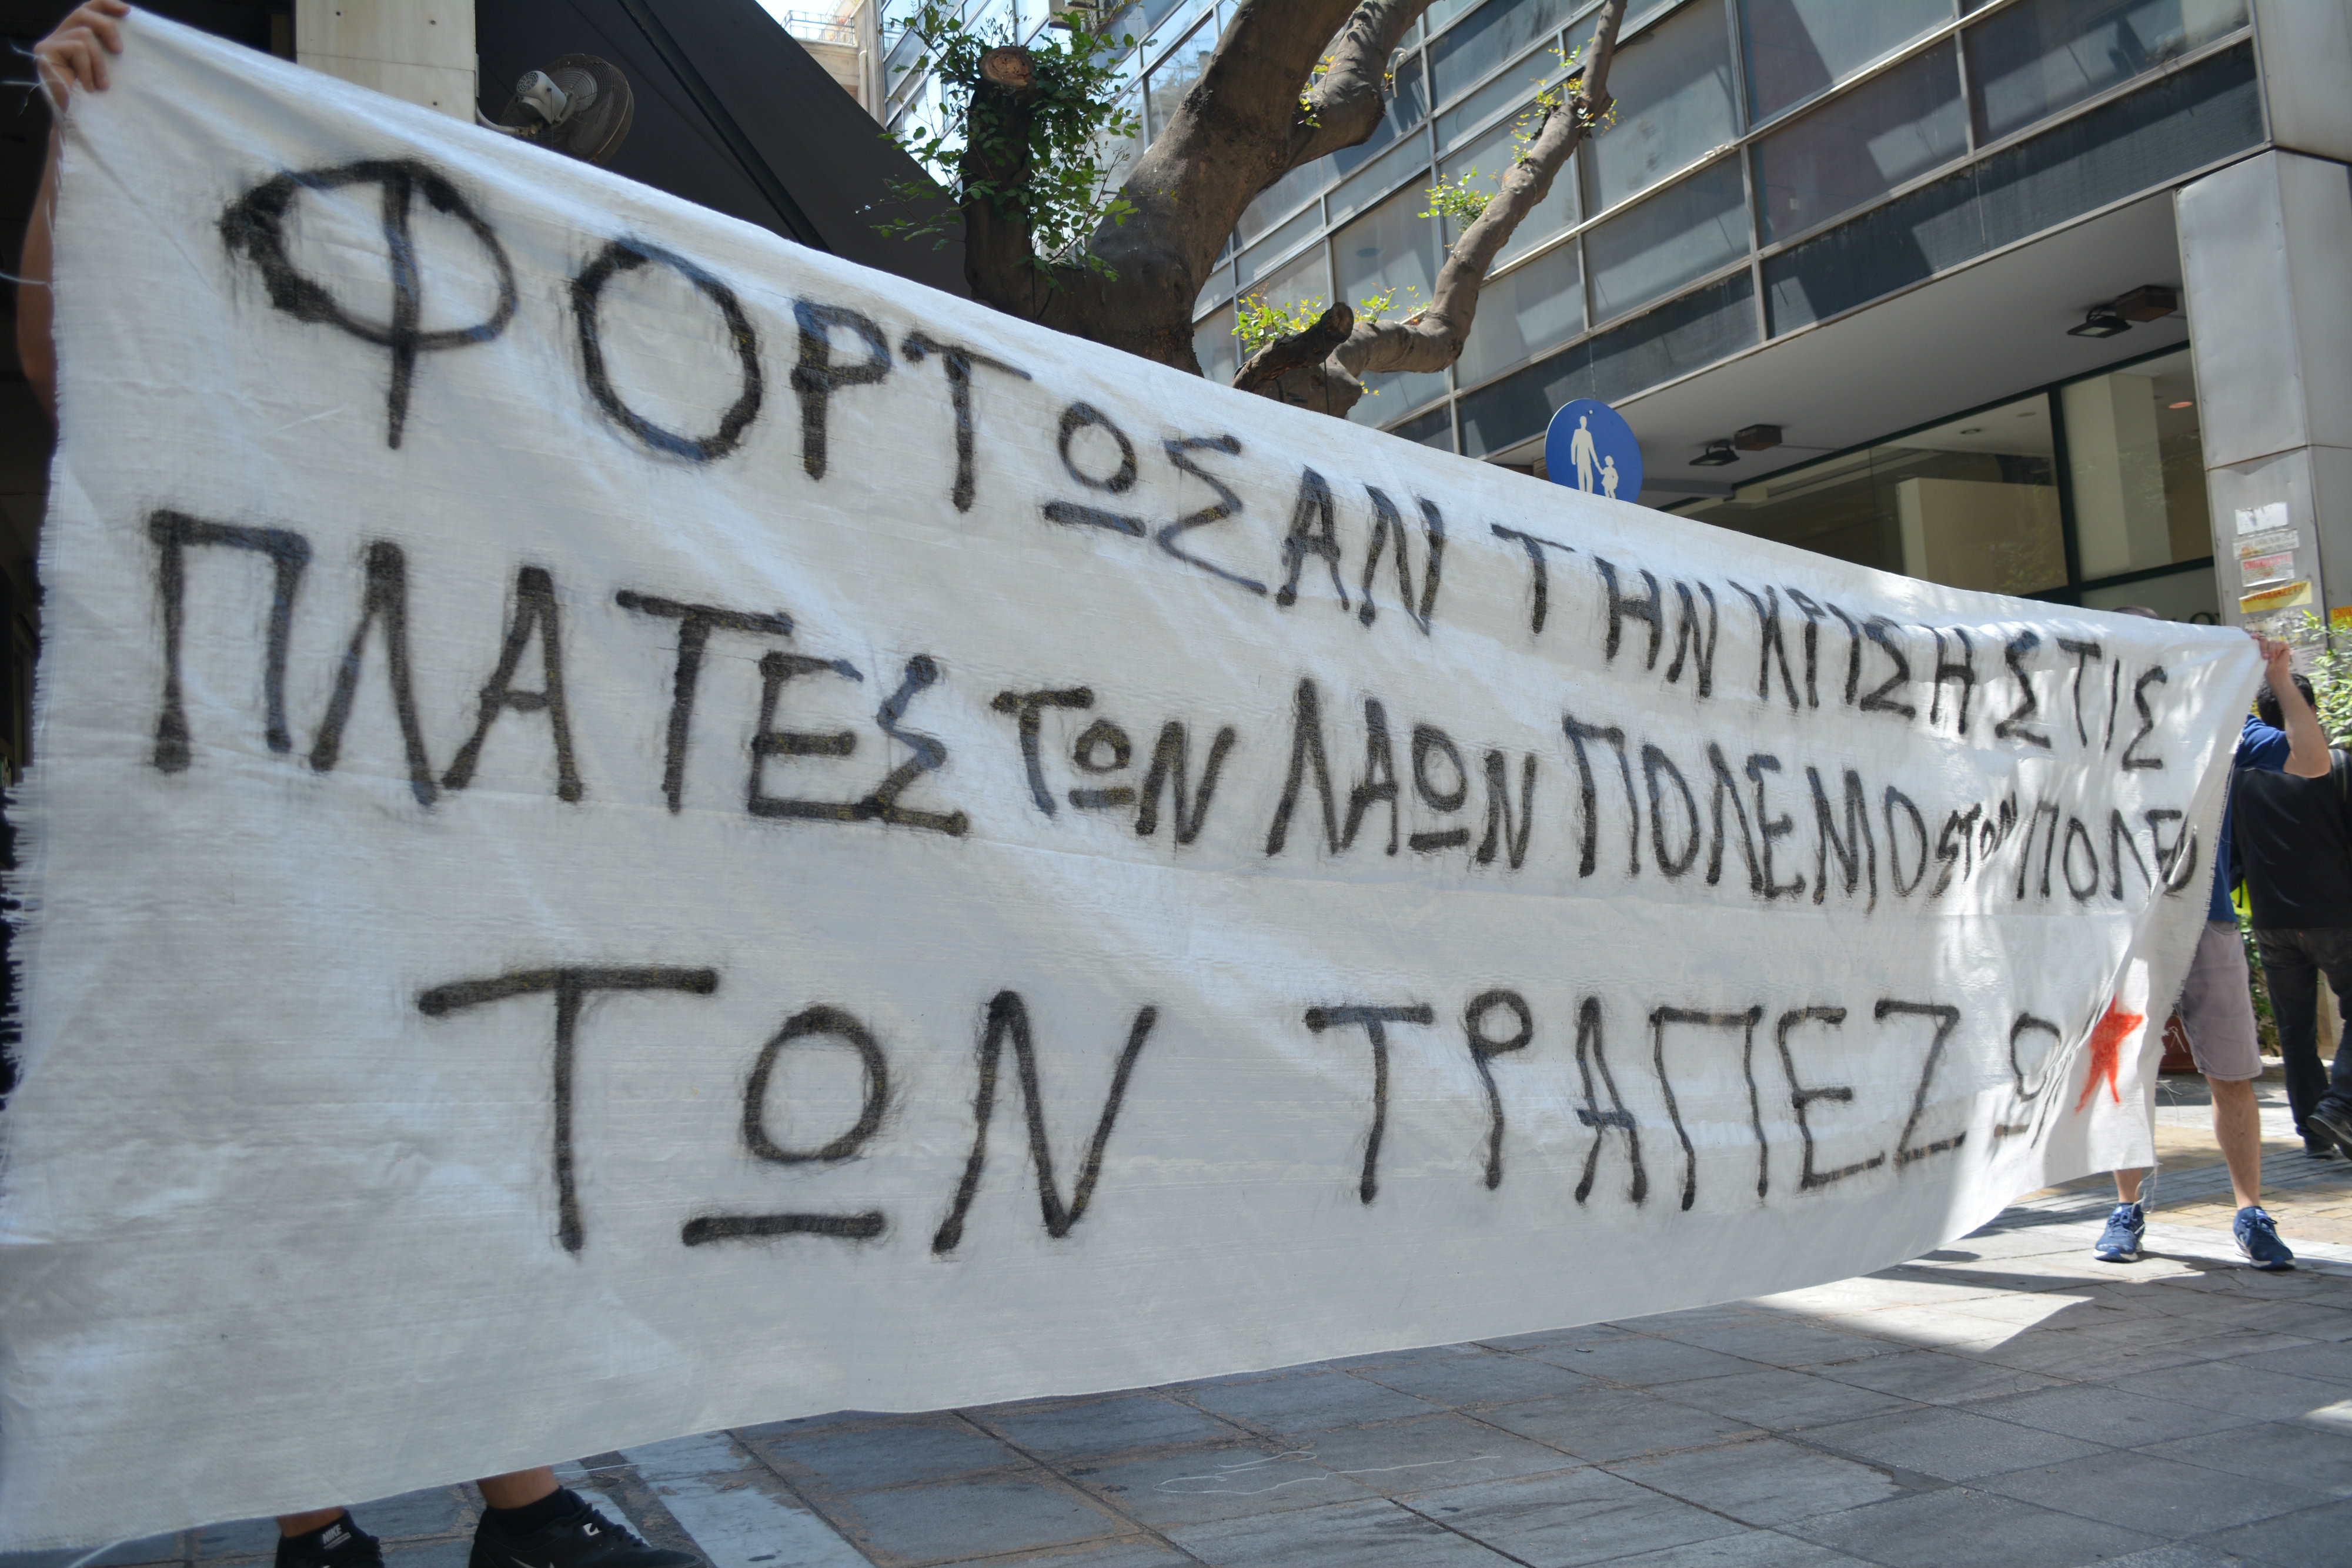 Παρέμβαση στα γραφεία της Ελληνικής Ένωσης Τραπεζών